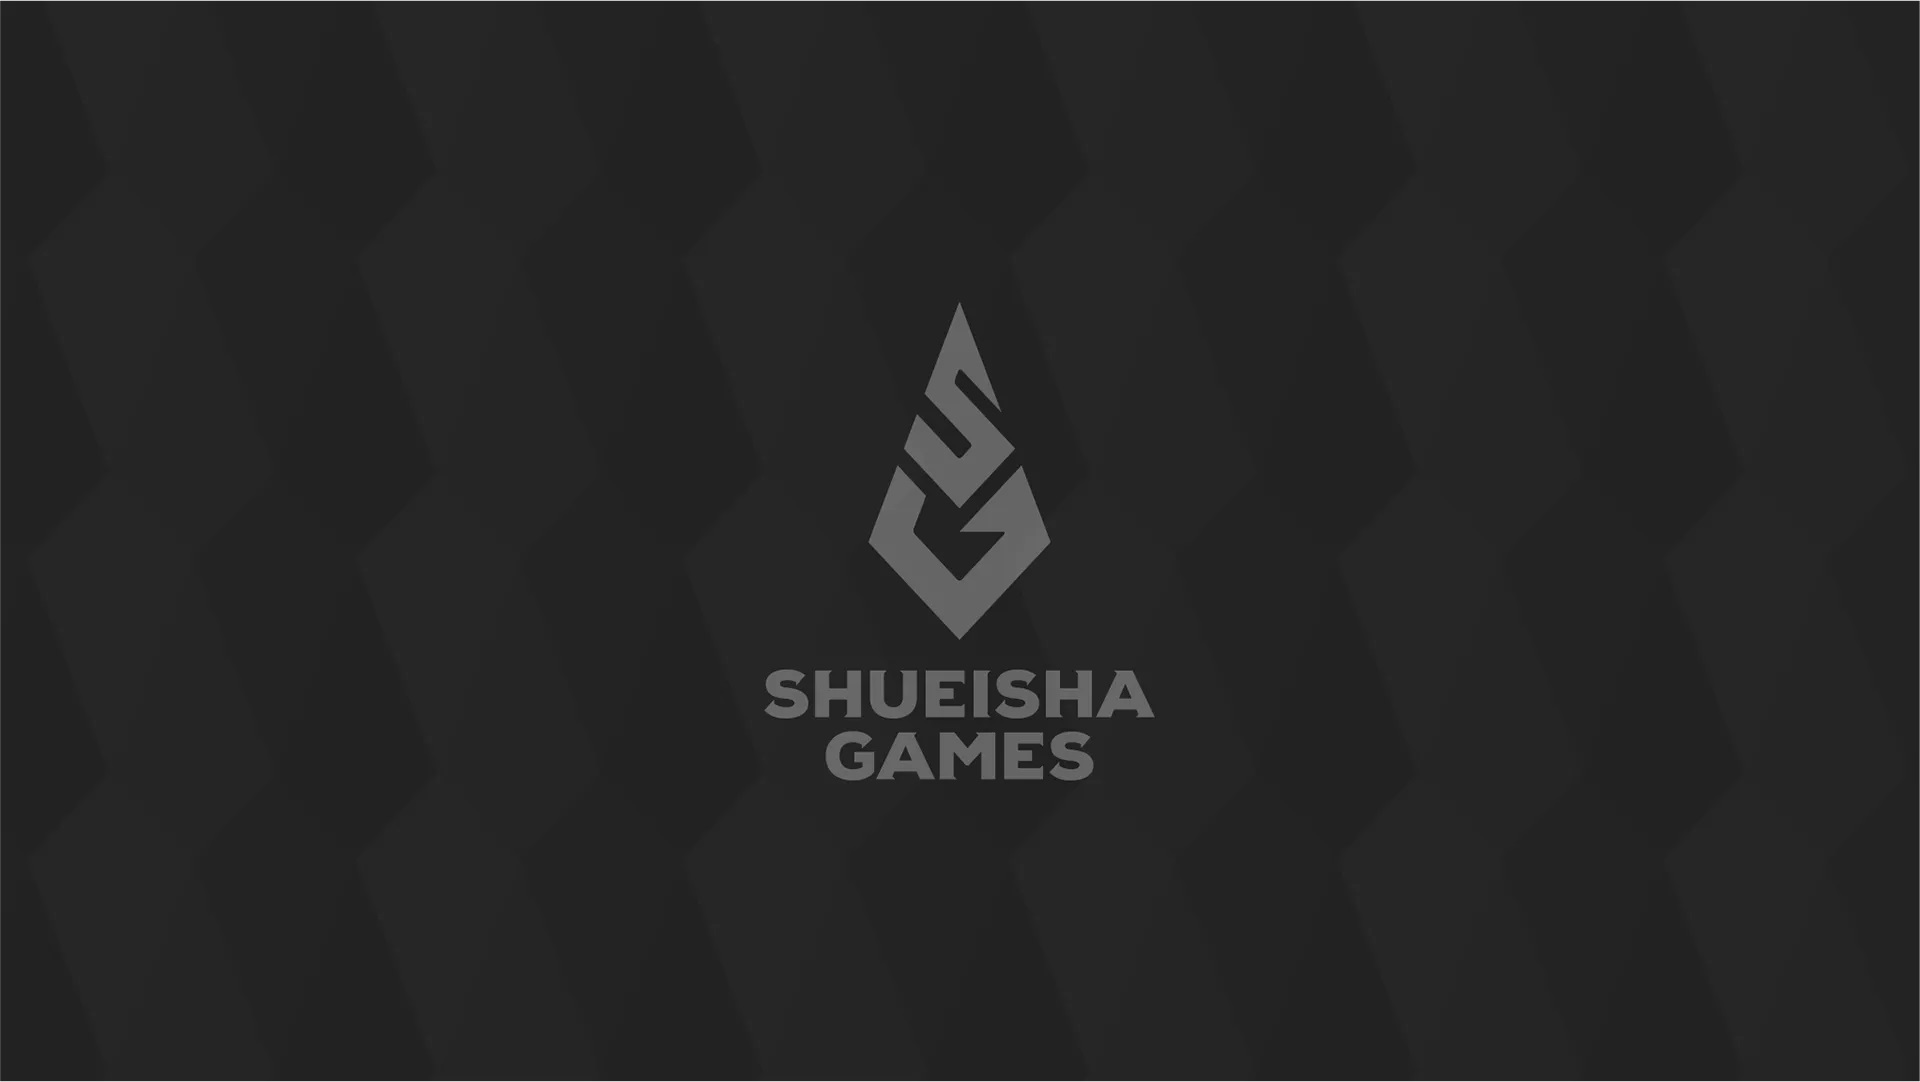 Shueisha has established Shueisha Games